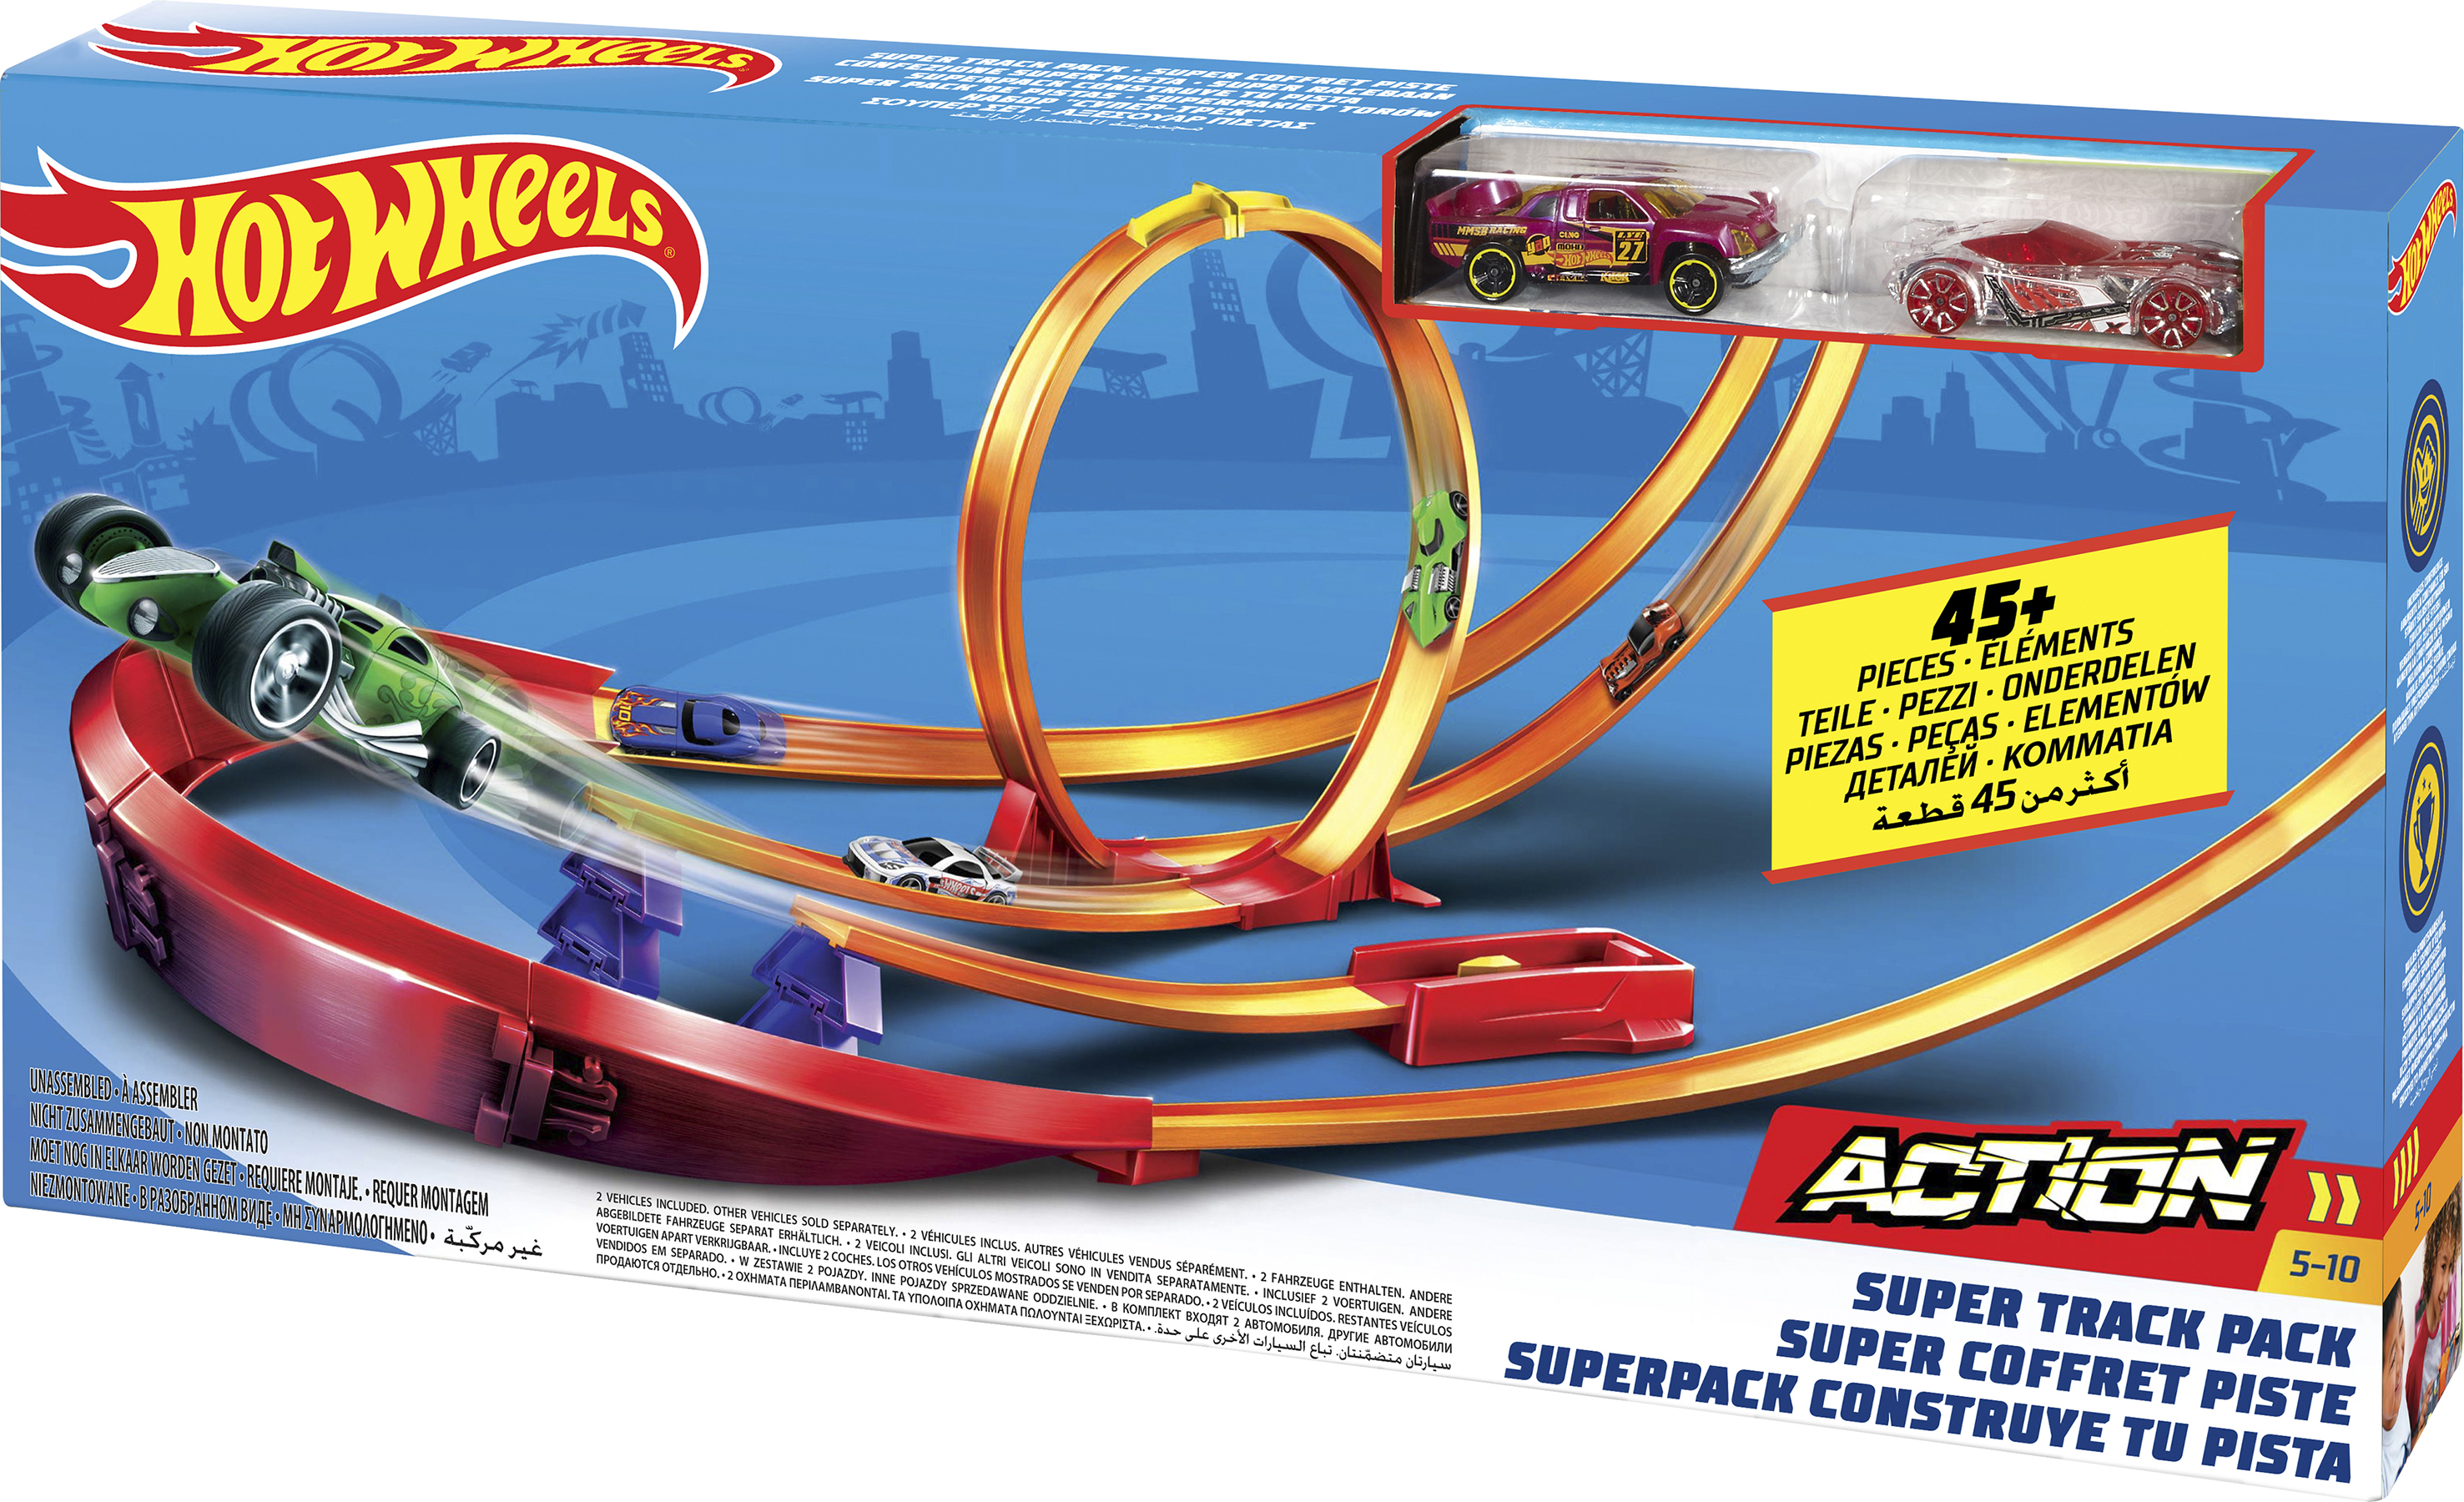 Track pack. Супер трек. Super track Pack. Hot Wheels Racing super track Pack сборка. Картинки супер трек.